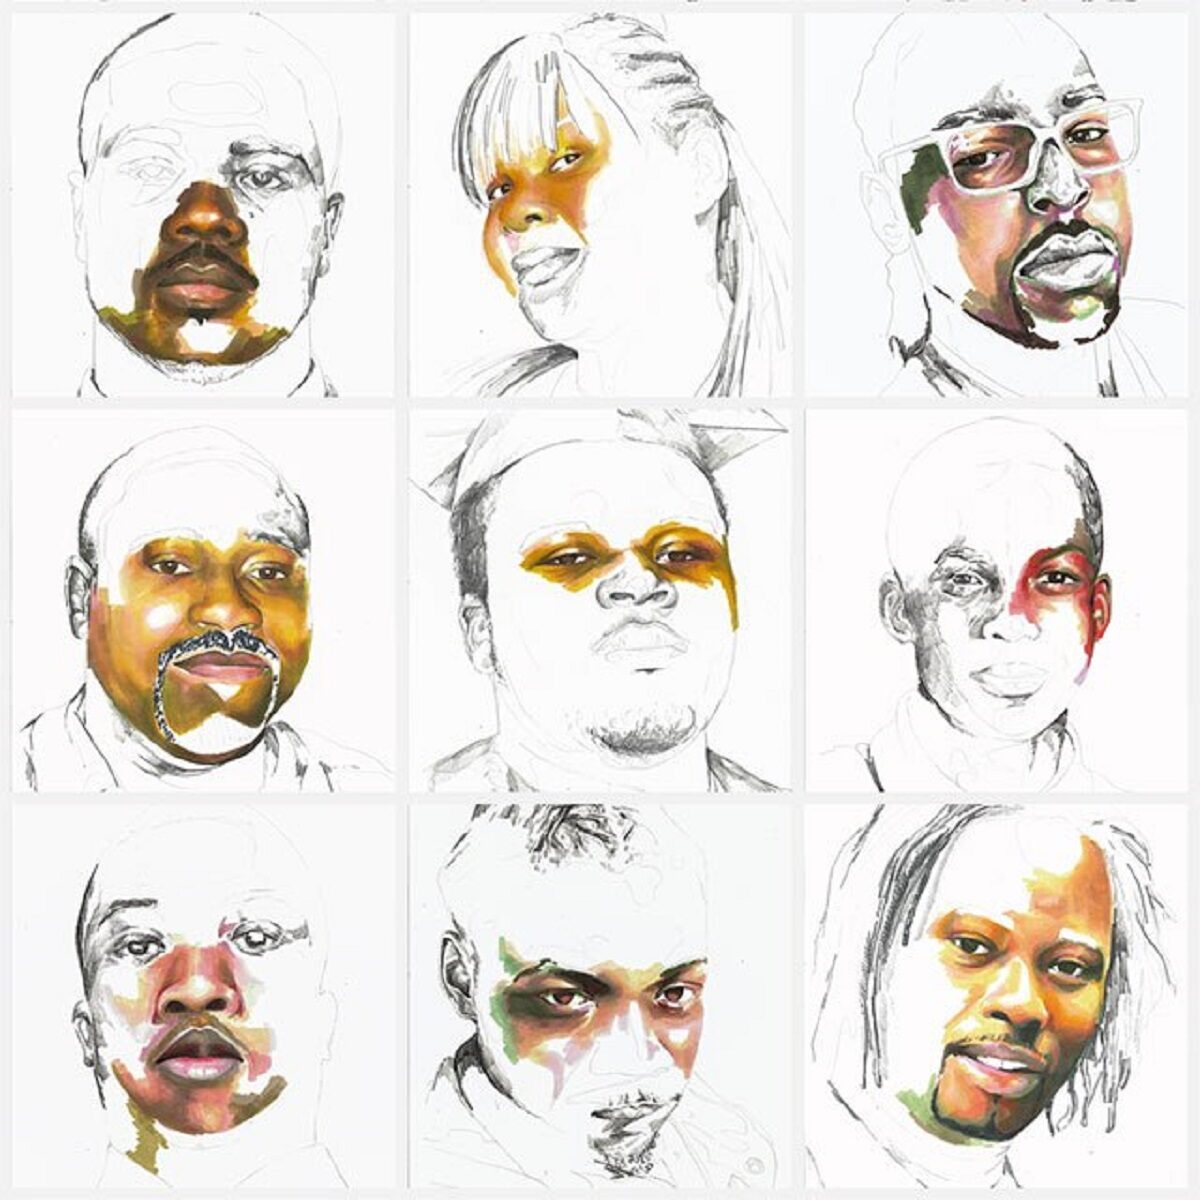 Stolen artista Adrian Brandon cria obra dedicada a negros mortos por policiais 12